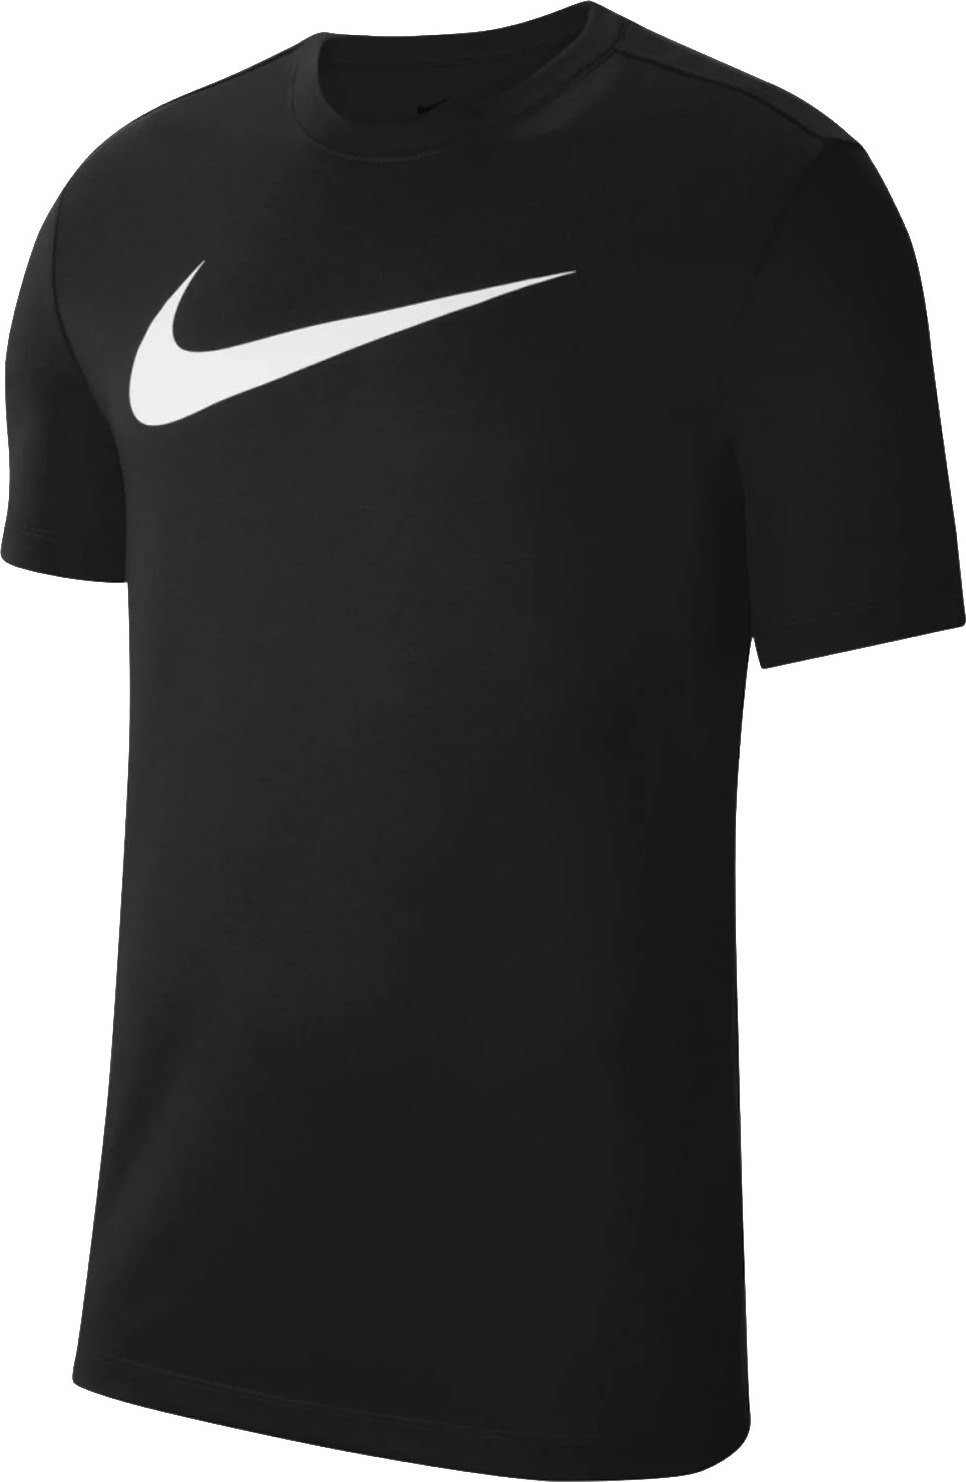 Černé sportovní tričko Nike Dri-FIT Park Tee CW6936-010 Velikost: S